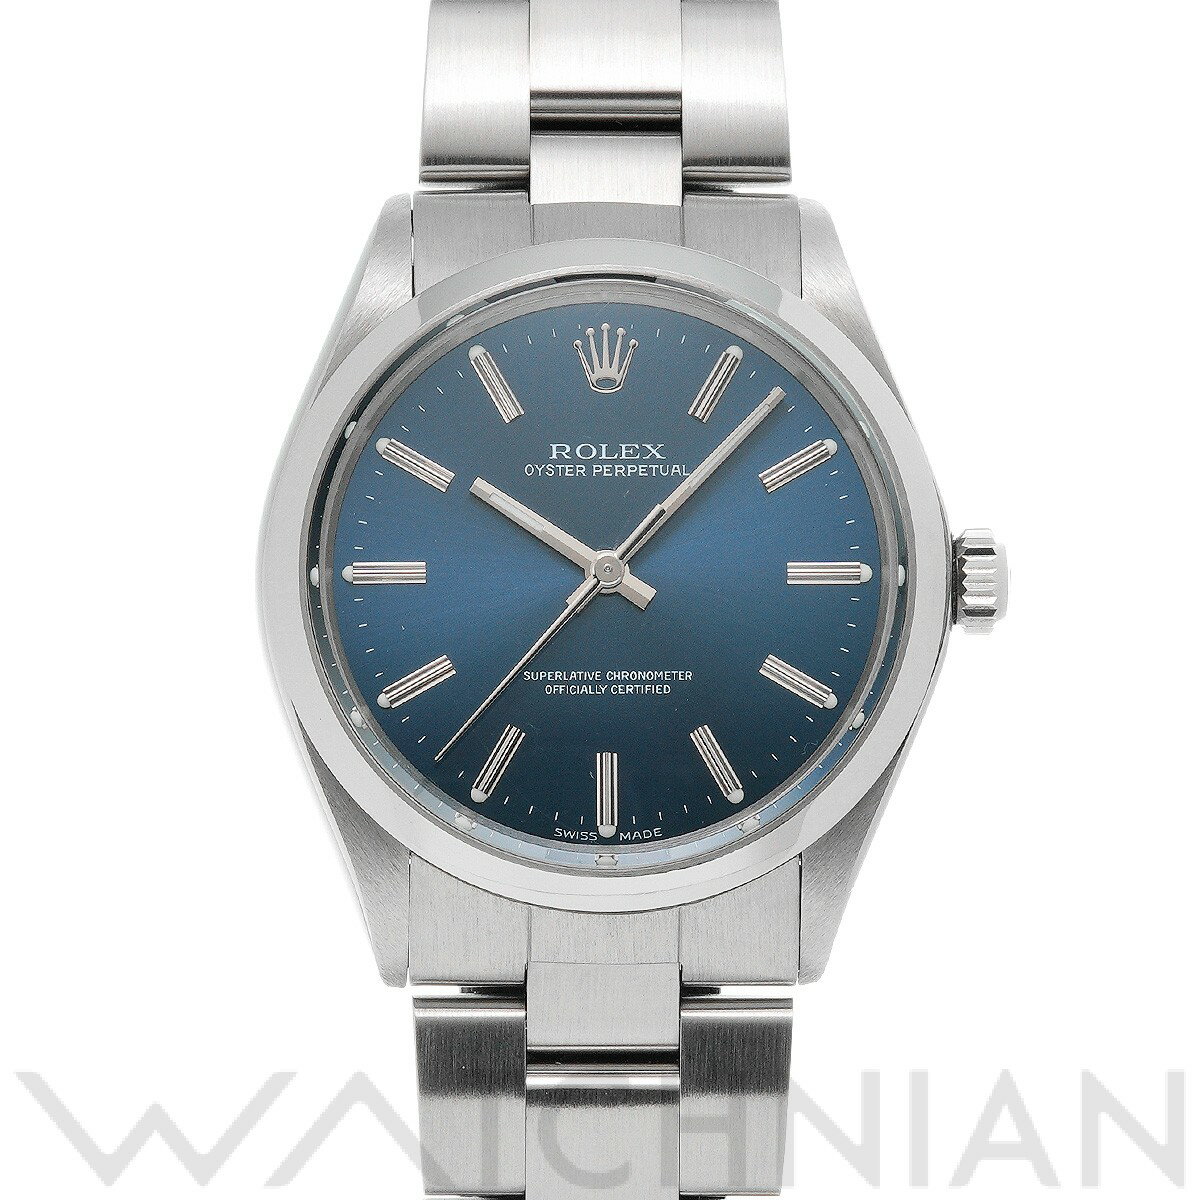 【中古】 ロレックス ROLEX オイスターパーペチュアル 1002 36番台(1974年頃製造) ブルー メンズ 腕時計